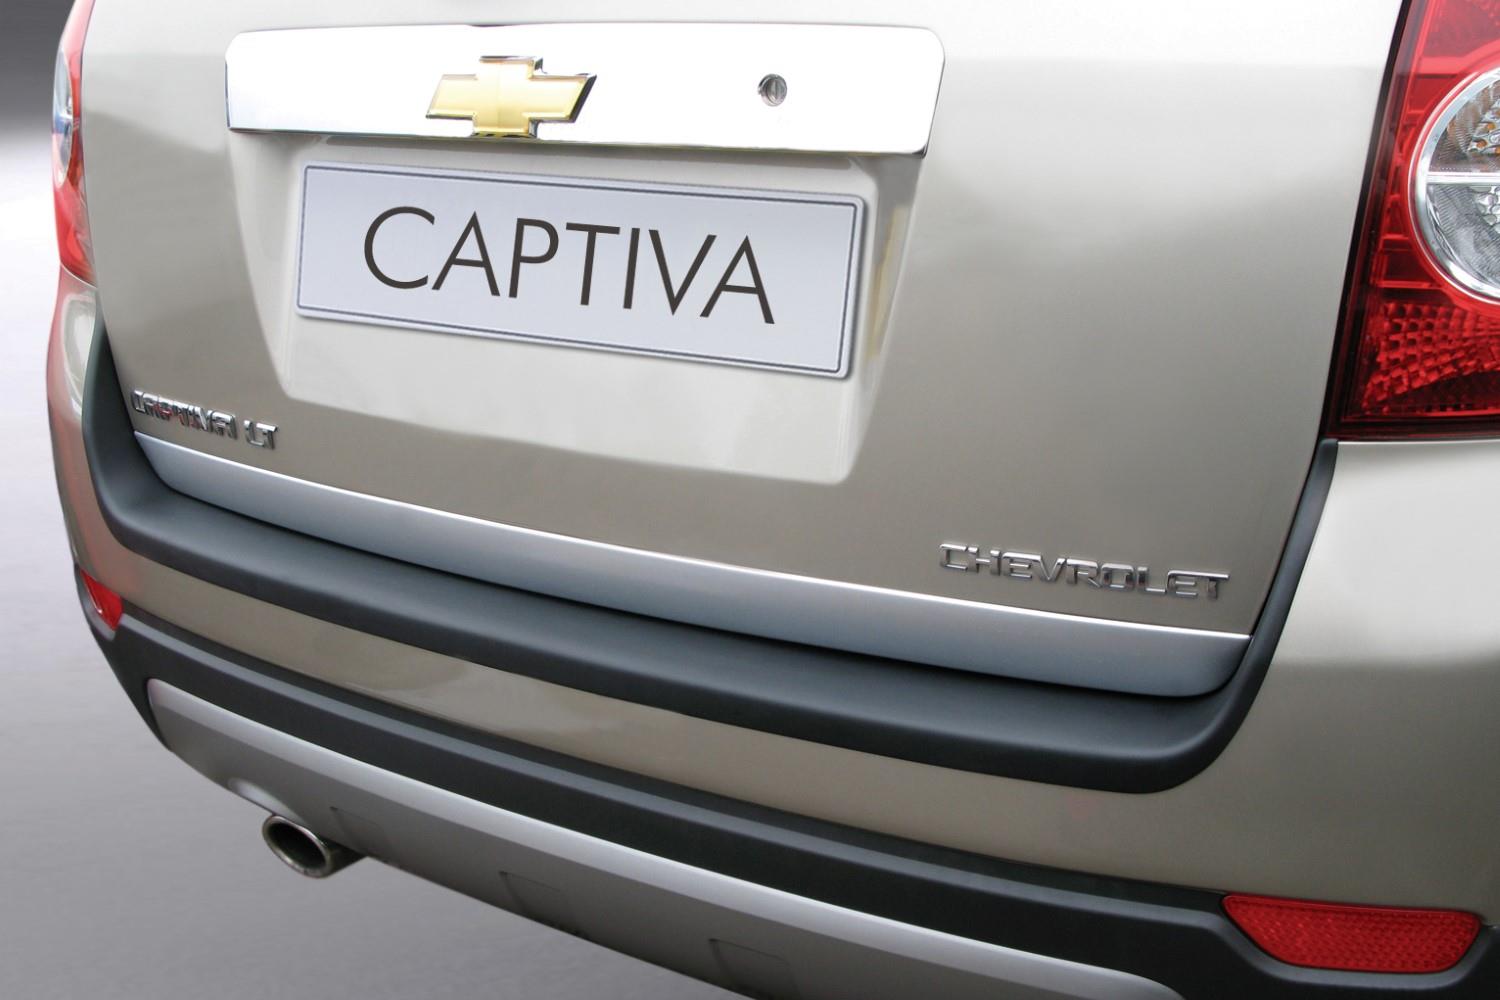 Ladekantenschutz passend für Chevrolet - Daewoo Captiva 2006-2013 ABS - Mattschwarz